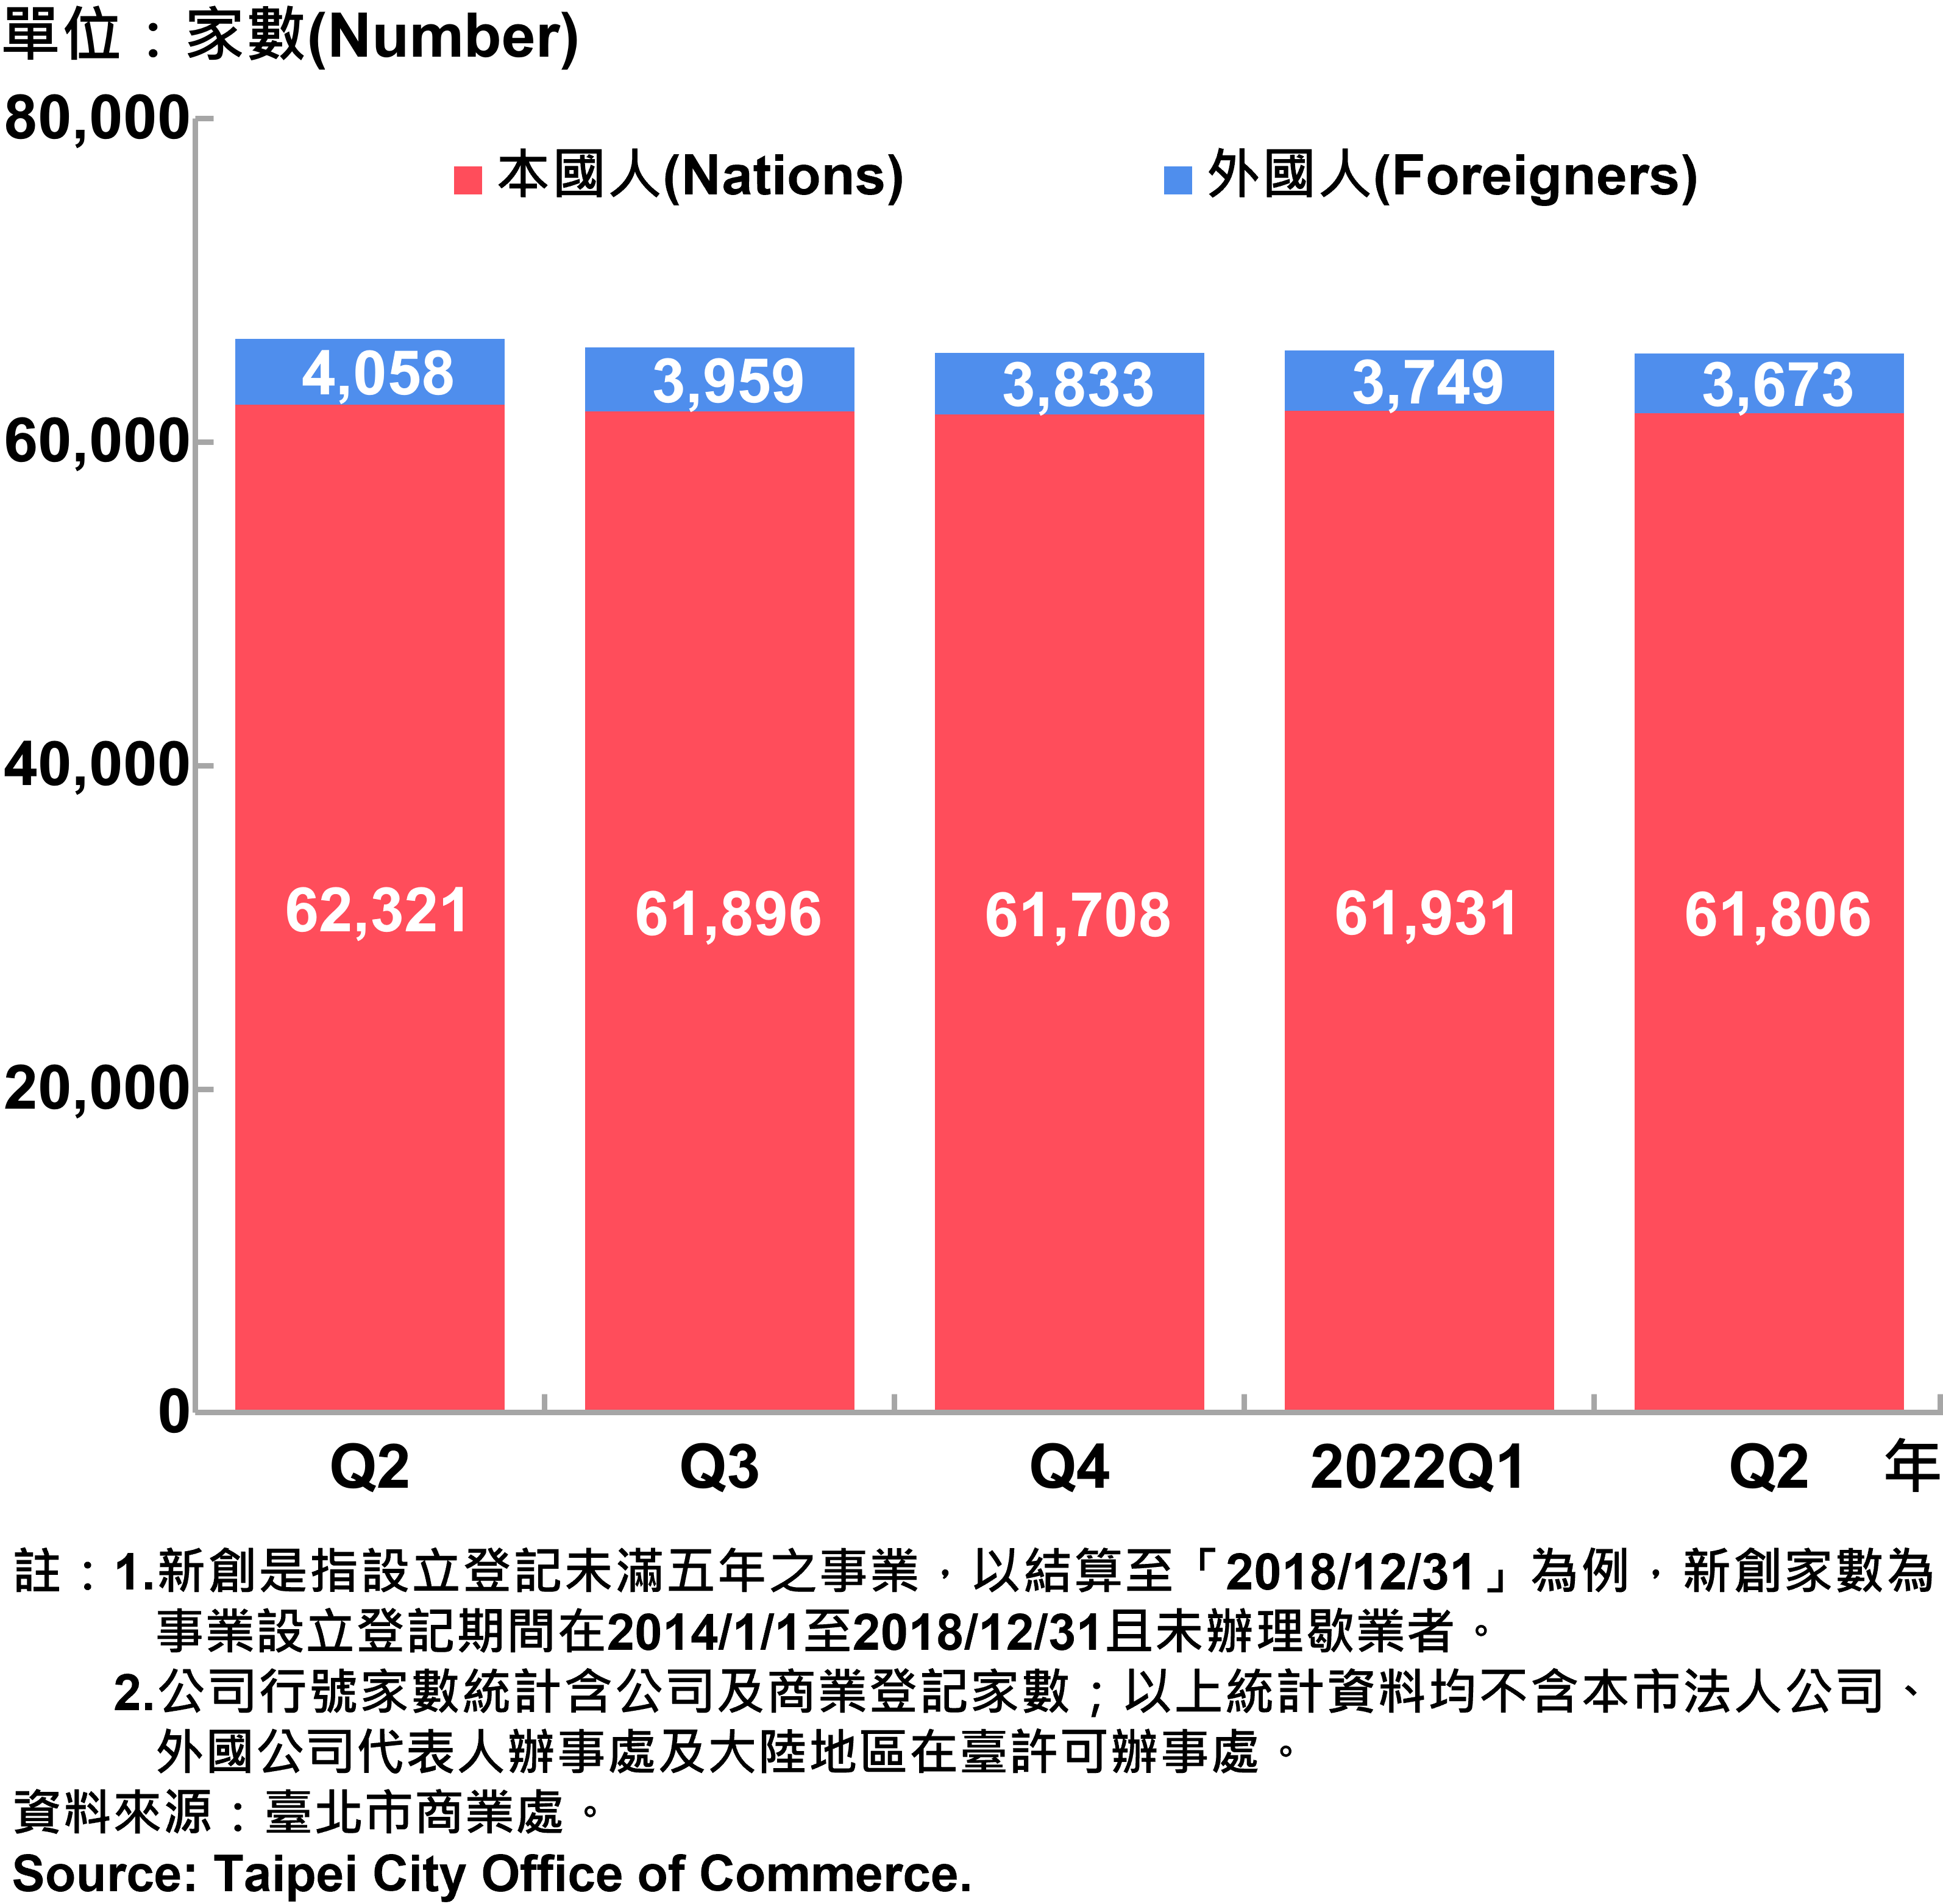 臺北市新創公司行號負責人-本國人與外國人分布情形-現存家數—2022Q2 Responsible Person of Newly Registered Companies In Taipei City by Nationality - Number of Current—2022Q2